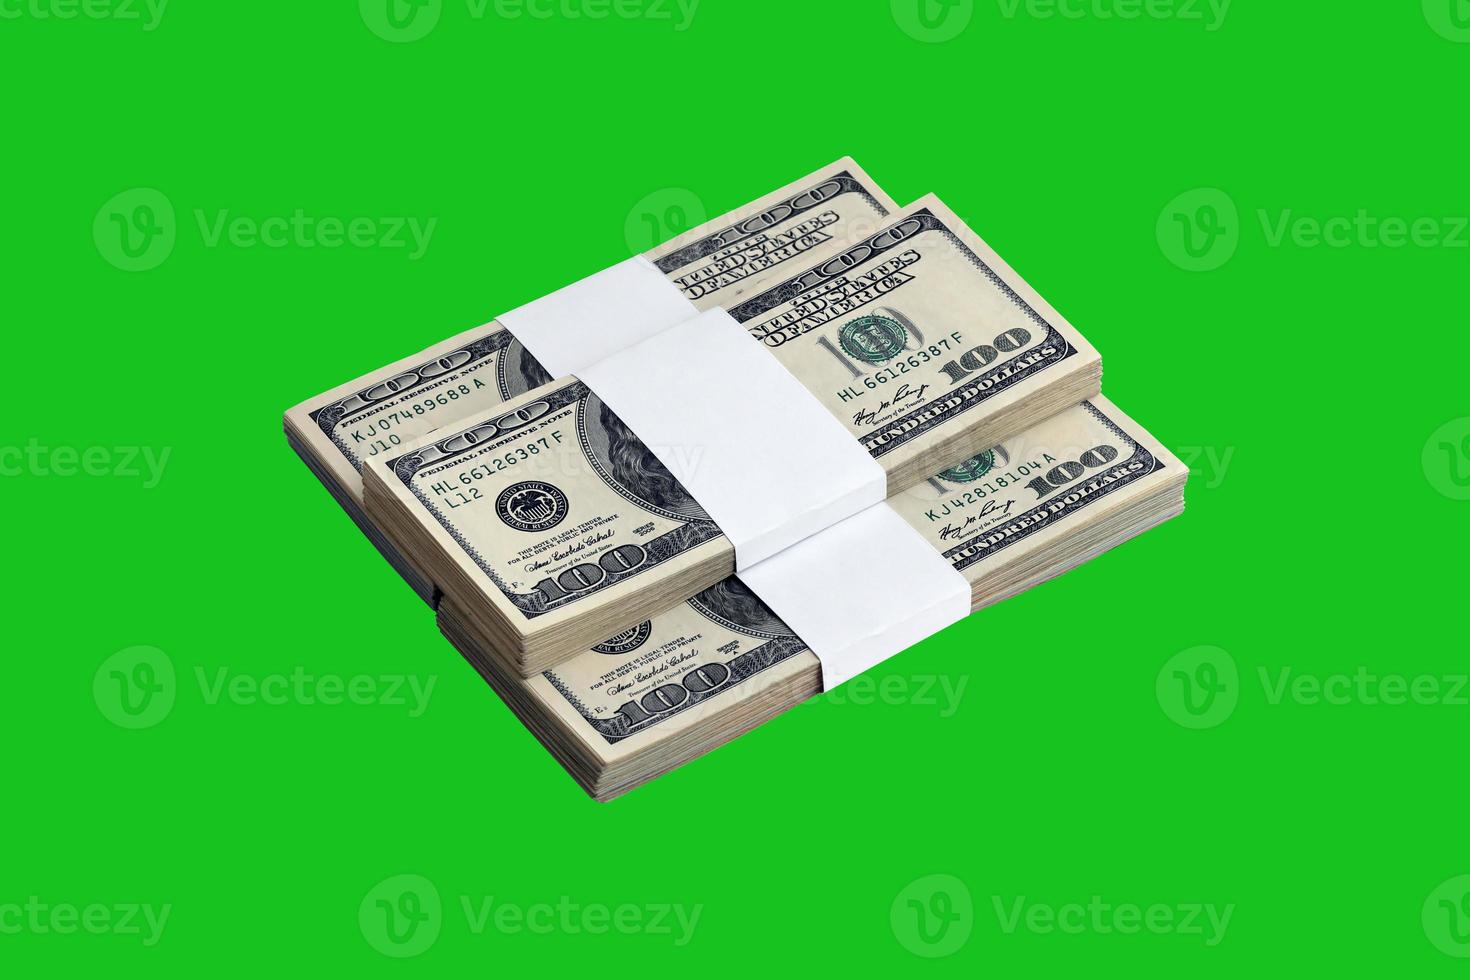 pacote de notas de dólar americano isoladas em chroma keyer verde. pacote de dinheiro americano com alta resolução na máscara verde perfeita foto